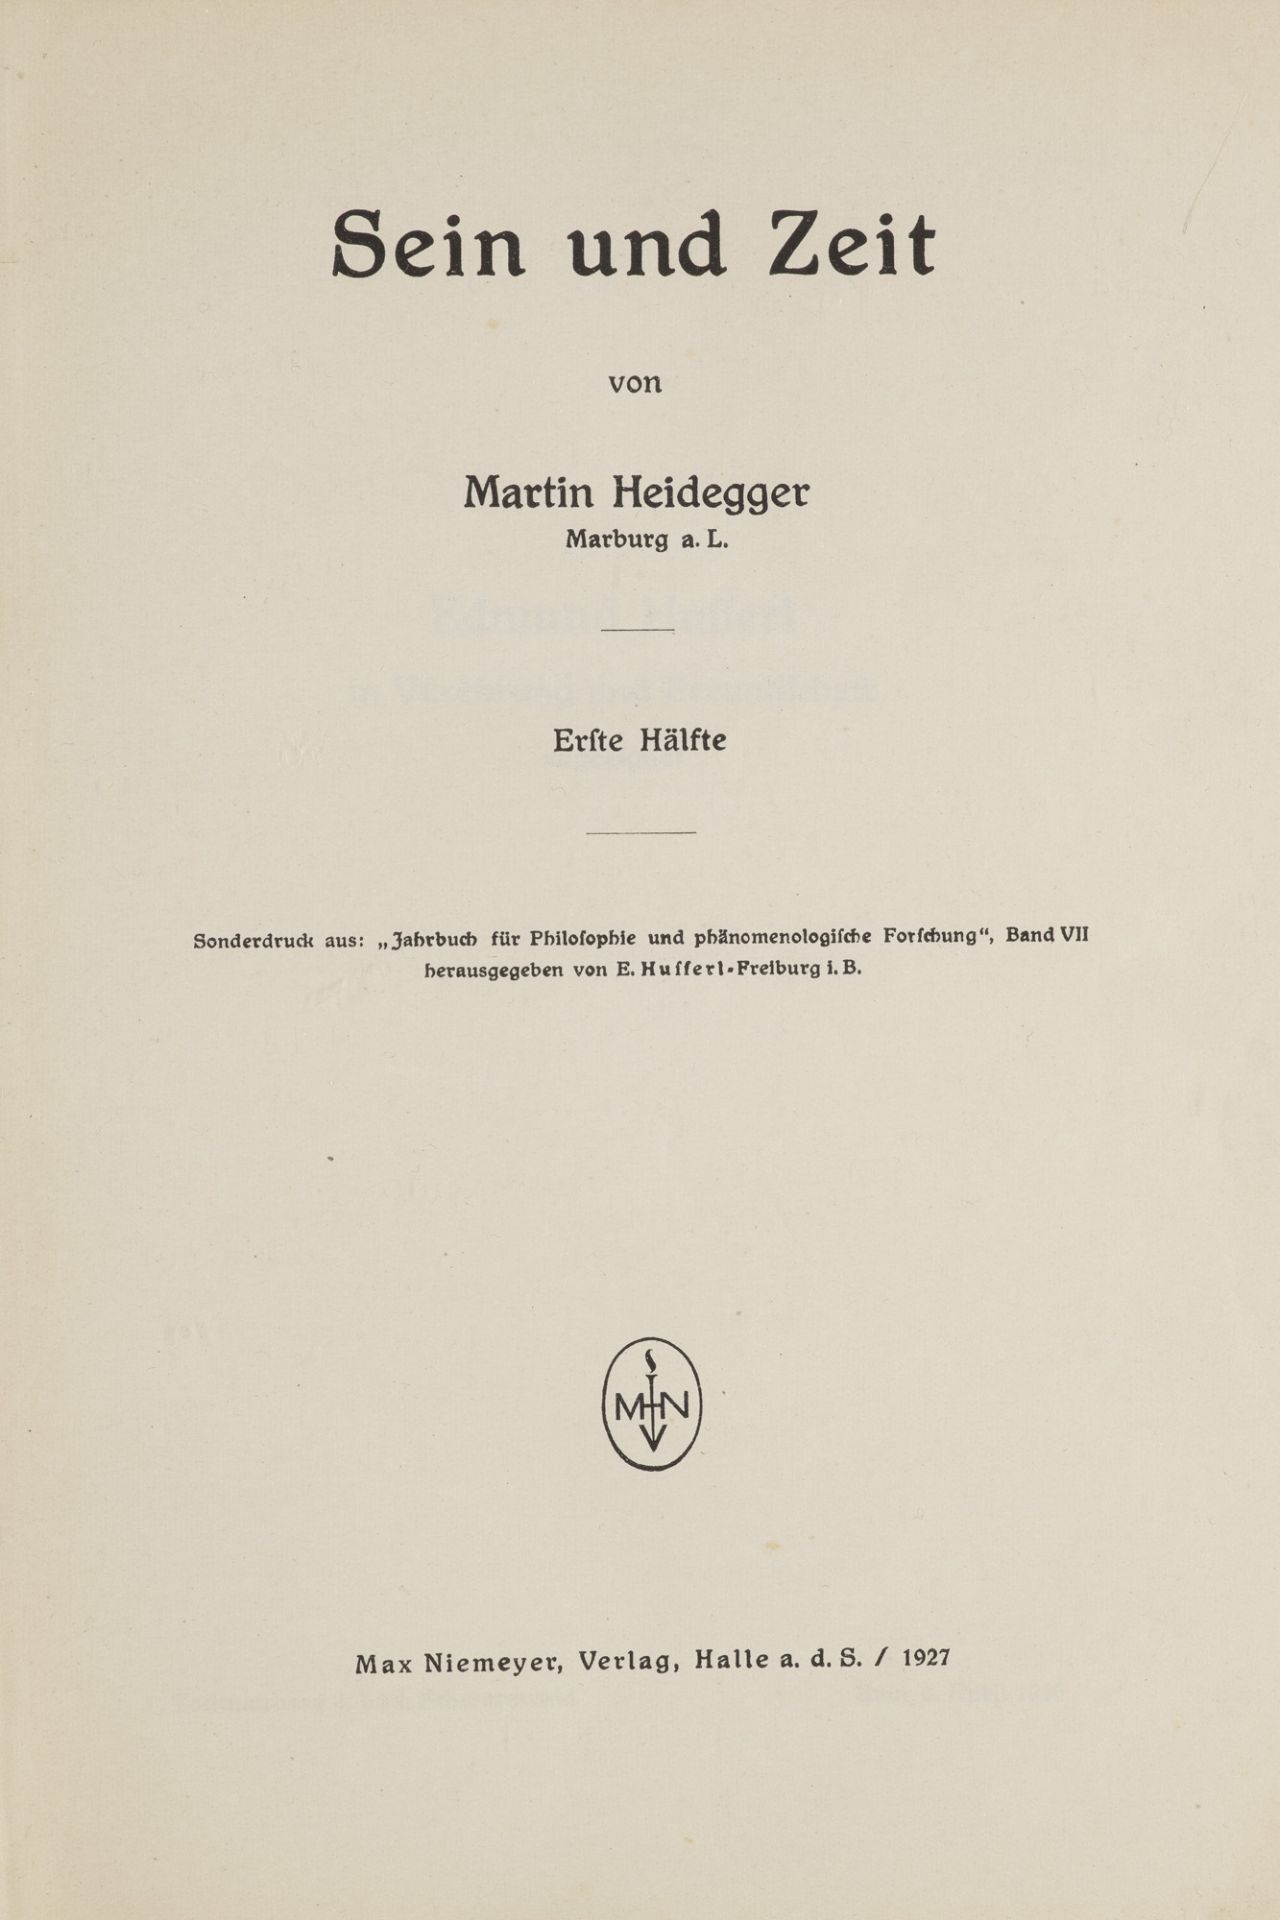 Martin Heidegger. Sein und Zeit. Erste